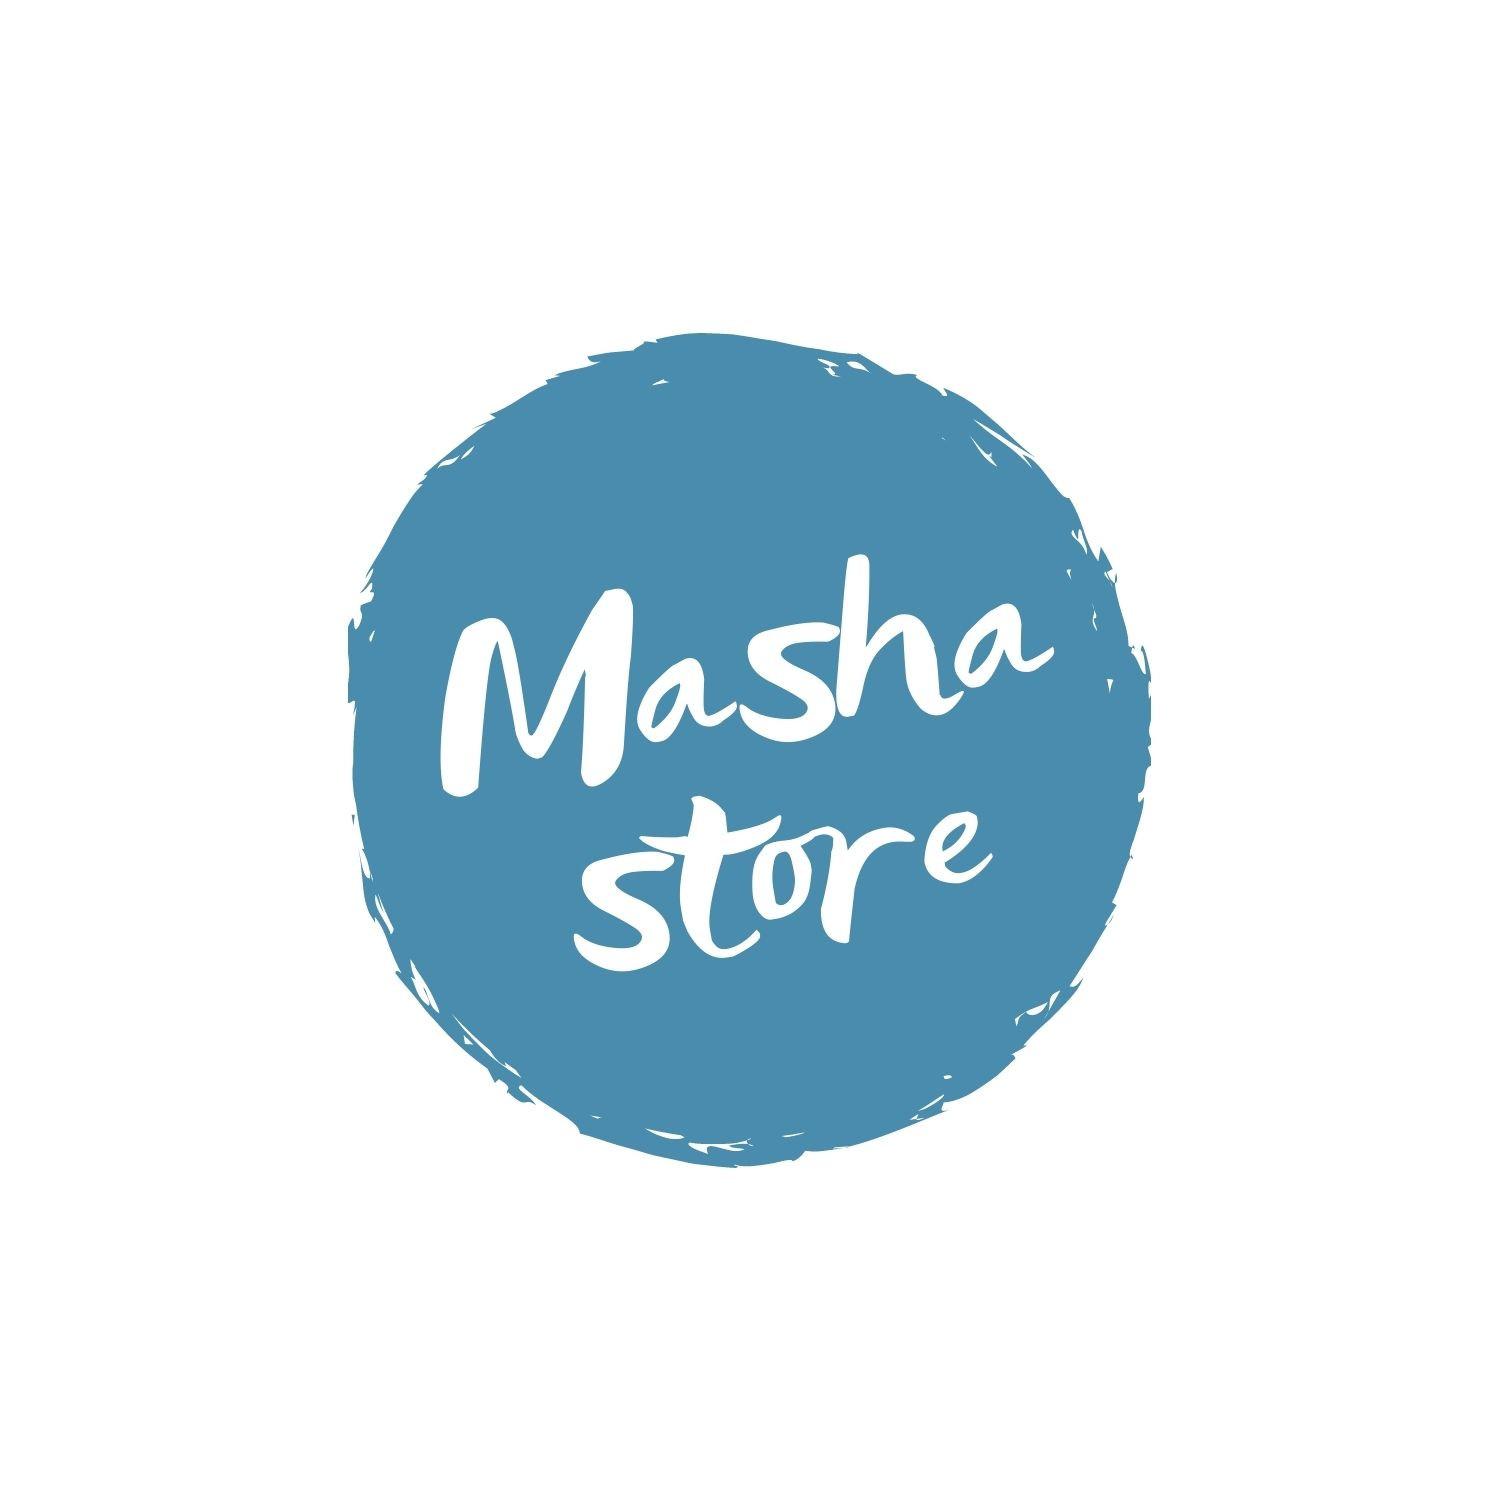 Masha store